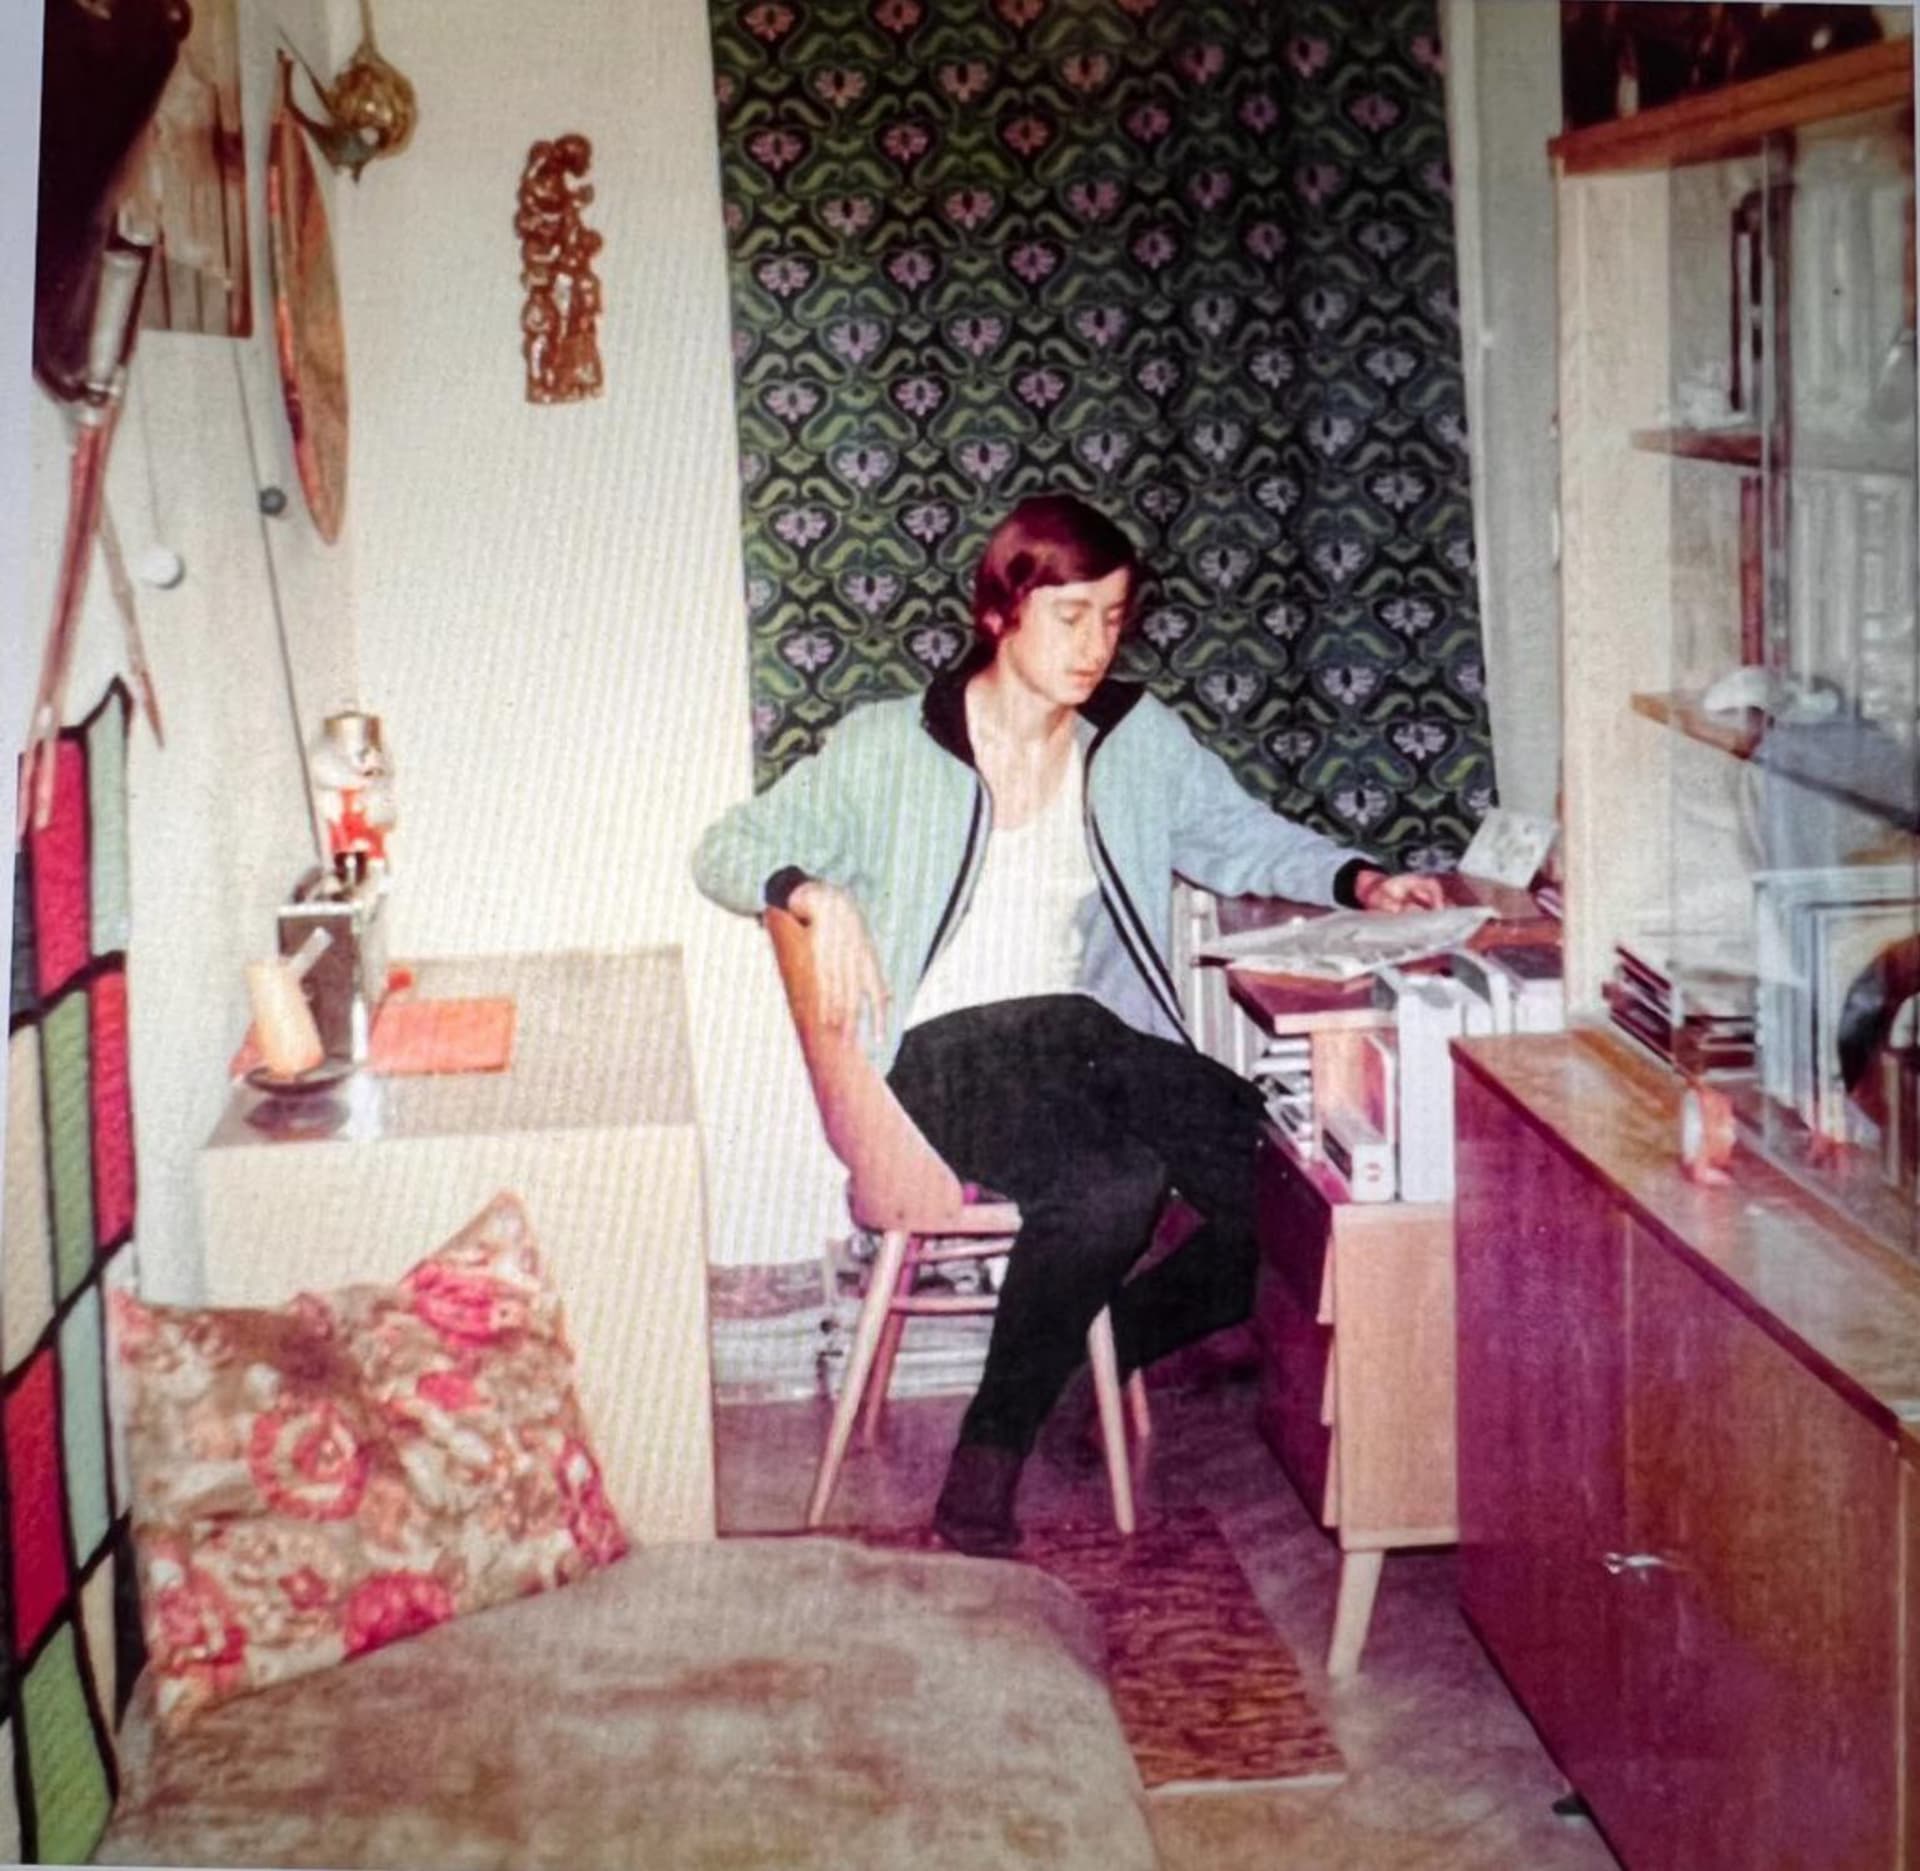 Andrej Babiš v pokoji u rodičů, když mu bylo 18 let.